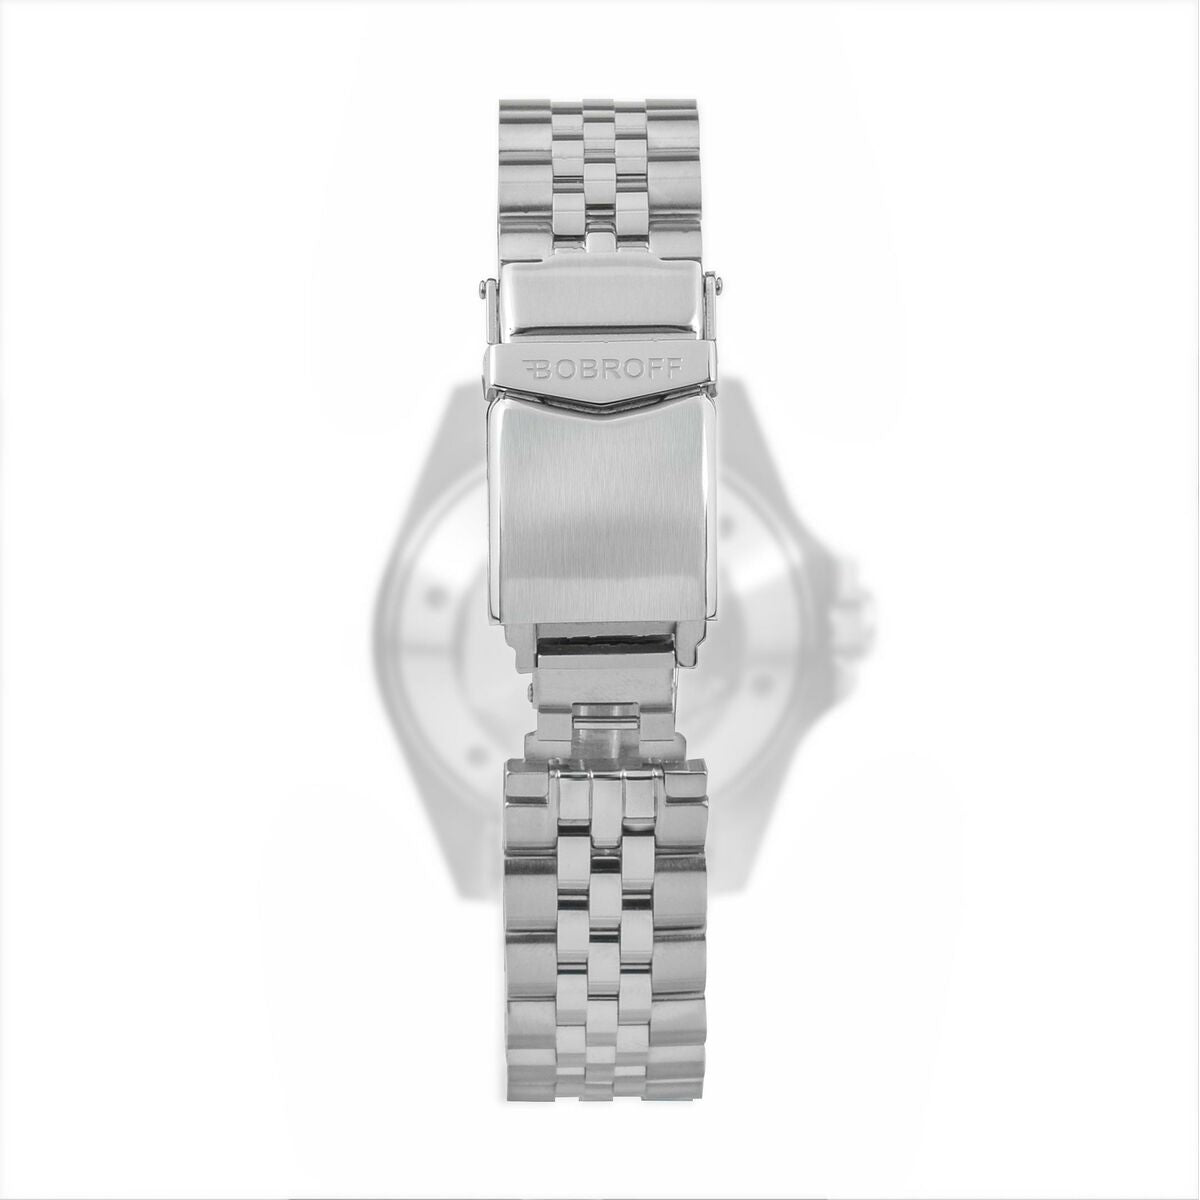 Horloge-armband Bobroff BFSTJ